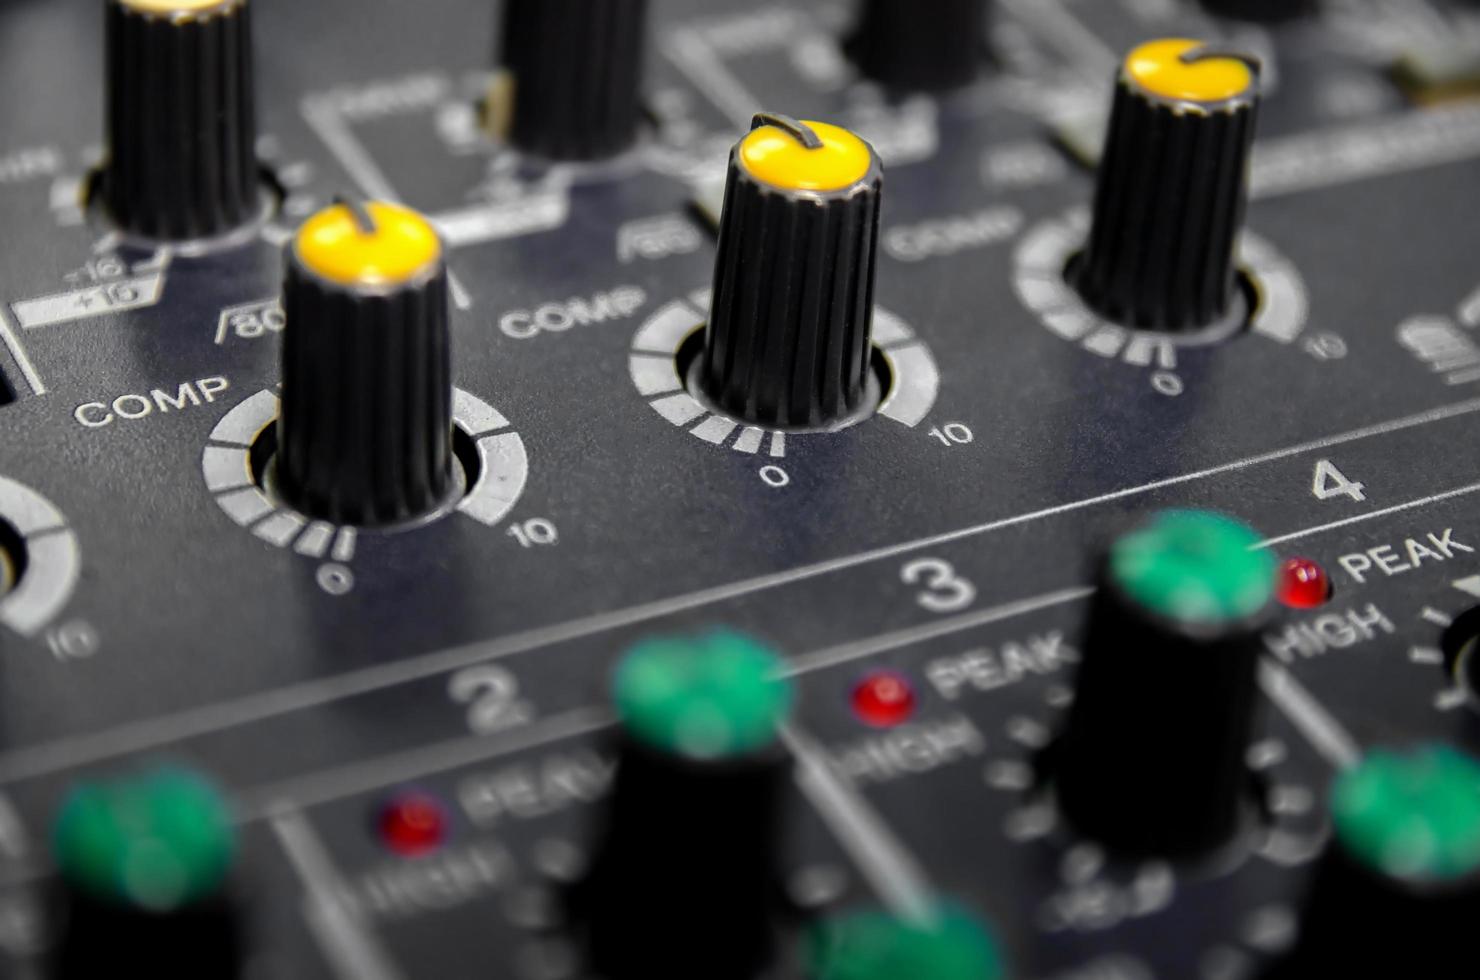 console mixer audio e mixaggio audio con pulsanti e cursori. foto